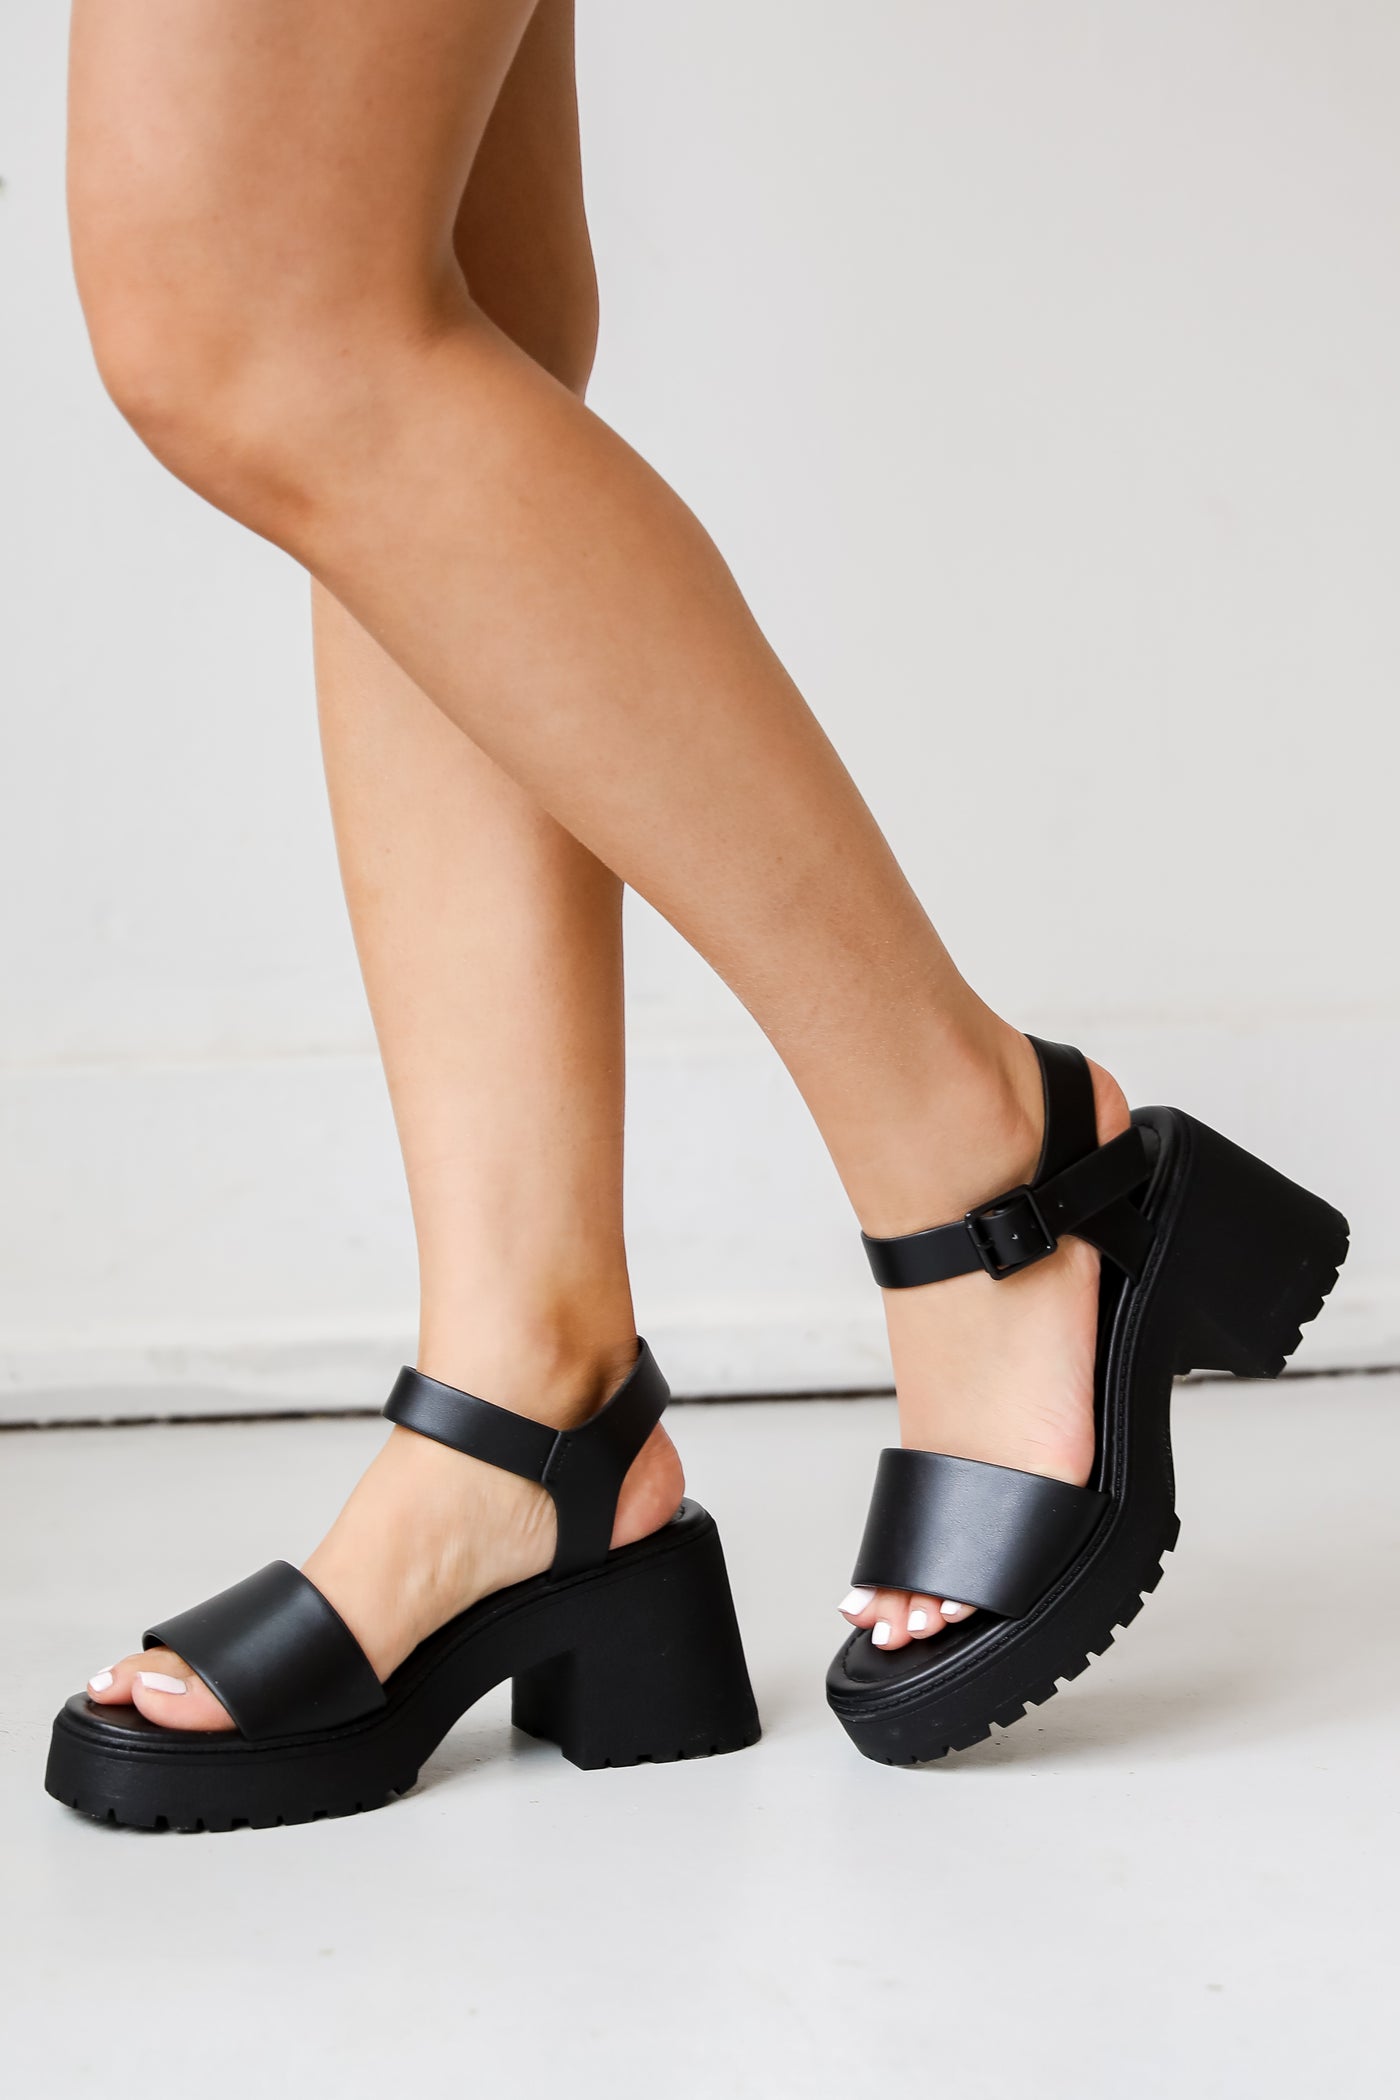 cute black heels